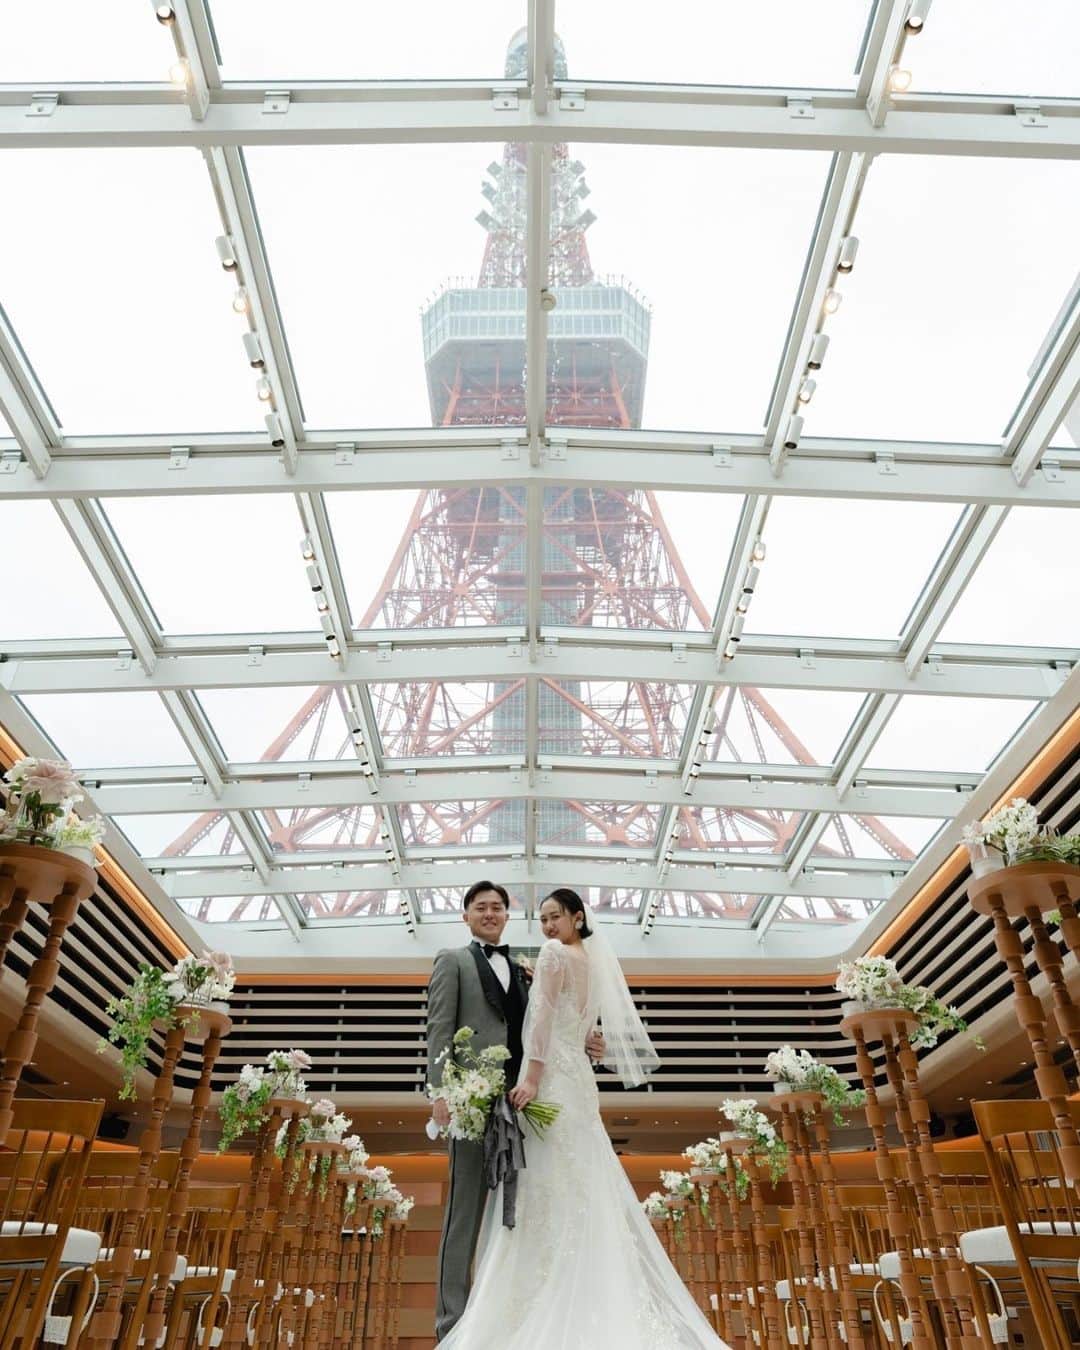 東京タワーの麓の結婚式のインスタグラム：「🗼 @theplaceoftokyo ←他の投稿はこちら  東京タワーの麓で挙げる結婚式⛪️💞  ロケーションを見て👀 撮って楽しむことができる📷✨ だけではなく 東京タワー🗼は皆様を 会場まで案内してくれて💁‍♀️🍀  結婚式の後には 皆様との想い出を結びつけくれる🎀  ゲストの皆様との特別な時間は 東京タワー🗼と共に 繋がり続けていきます💛  ｰｰｰｰｰｰｰｰｰｰｰｰｰｰｰｰｰｰｰｰｰｰｰｰｰｰｰｰ  東京タワーの麓の結婚式場 The Place of Tokyo @theplaceoftokyo   思い出の場所は はじまりの場所となり 永遠の場所に変わる  2023.9 リニューアルオープン  ｰｰｰｰｰｰｰｰｰｰｰｰｰｰｰｰｰｰｰｰｰｰｰｰｰｰｰｰ #プレオブ花嫁  #theplaceoftokyo #プレイスオブトウキョウ  #プレイスオブトーキョー  #プレイスオブ東京  #ザプレイスオブトーキョー  #ザプレイスオブ東京  #ザプレイスオブトーキョー  #東京結婚式場 #結婚式 #結婚式場 #ブライダルフェア #ウェディングフェア #プロポーズ #東京タワー #東京タワーが好き #tokyotower  #パーティーレポート #結婚式レポート #式場探し #式場見学 #プレ花嫁 #プレ花嫁準備 #2023花嫁 #プレ花嫁2023 #2024花嫁 #プレ花嫁2024」